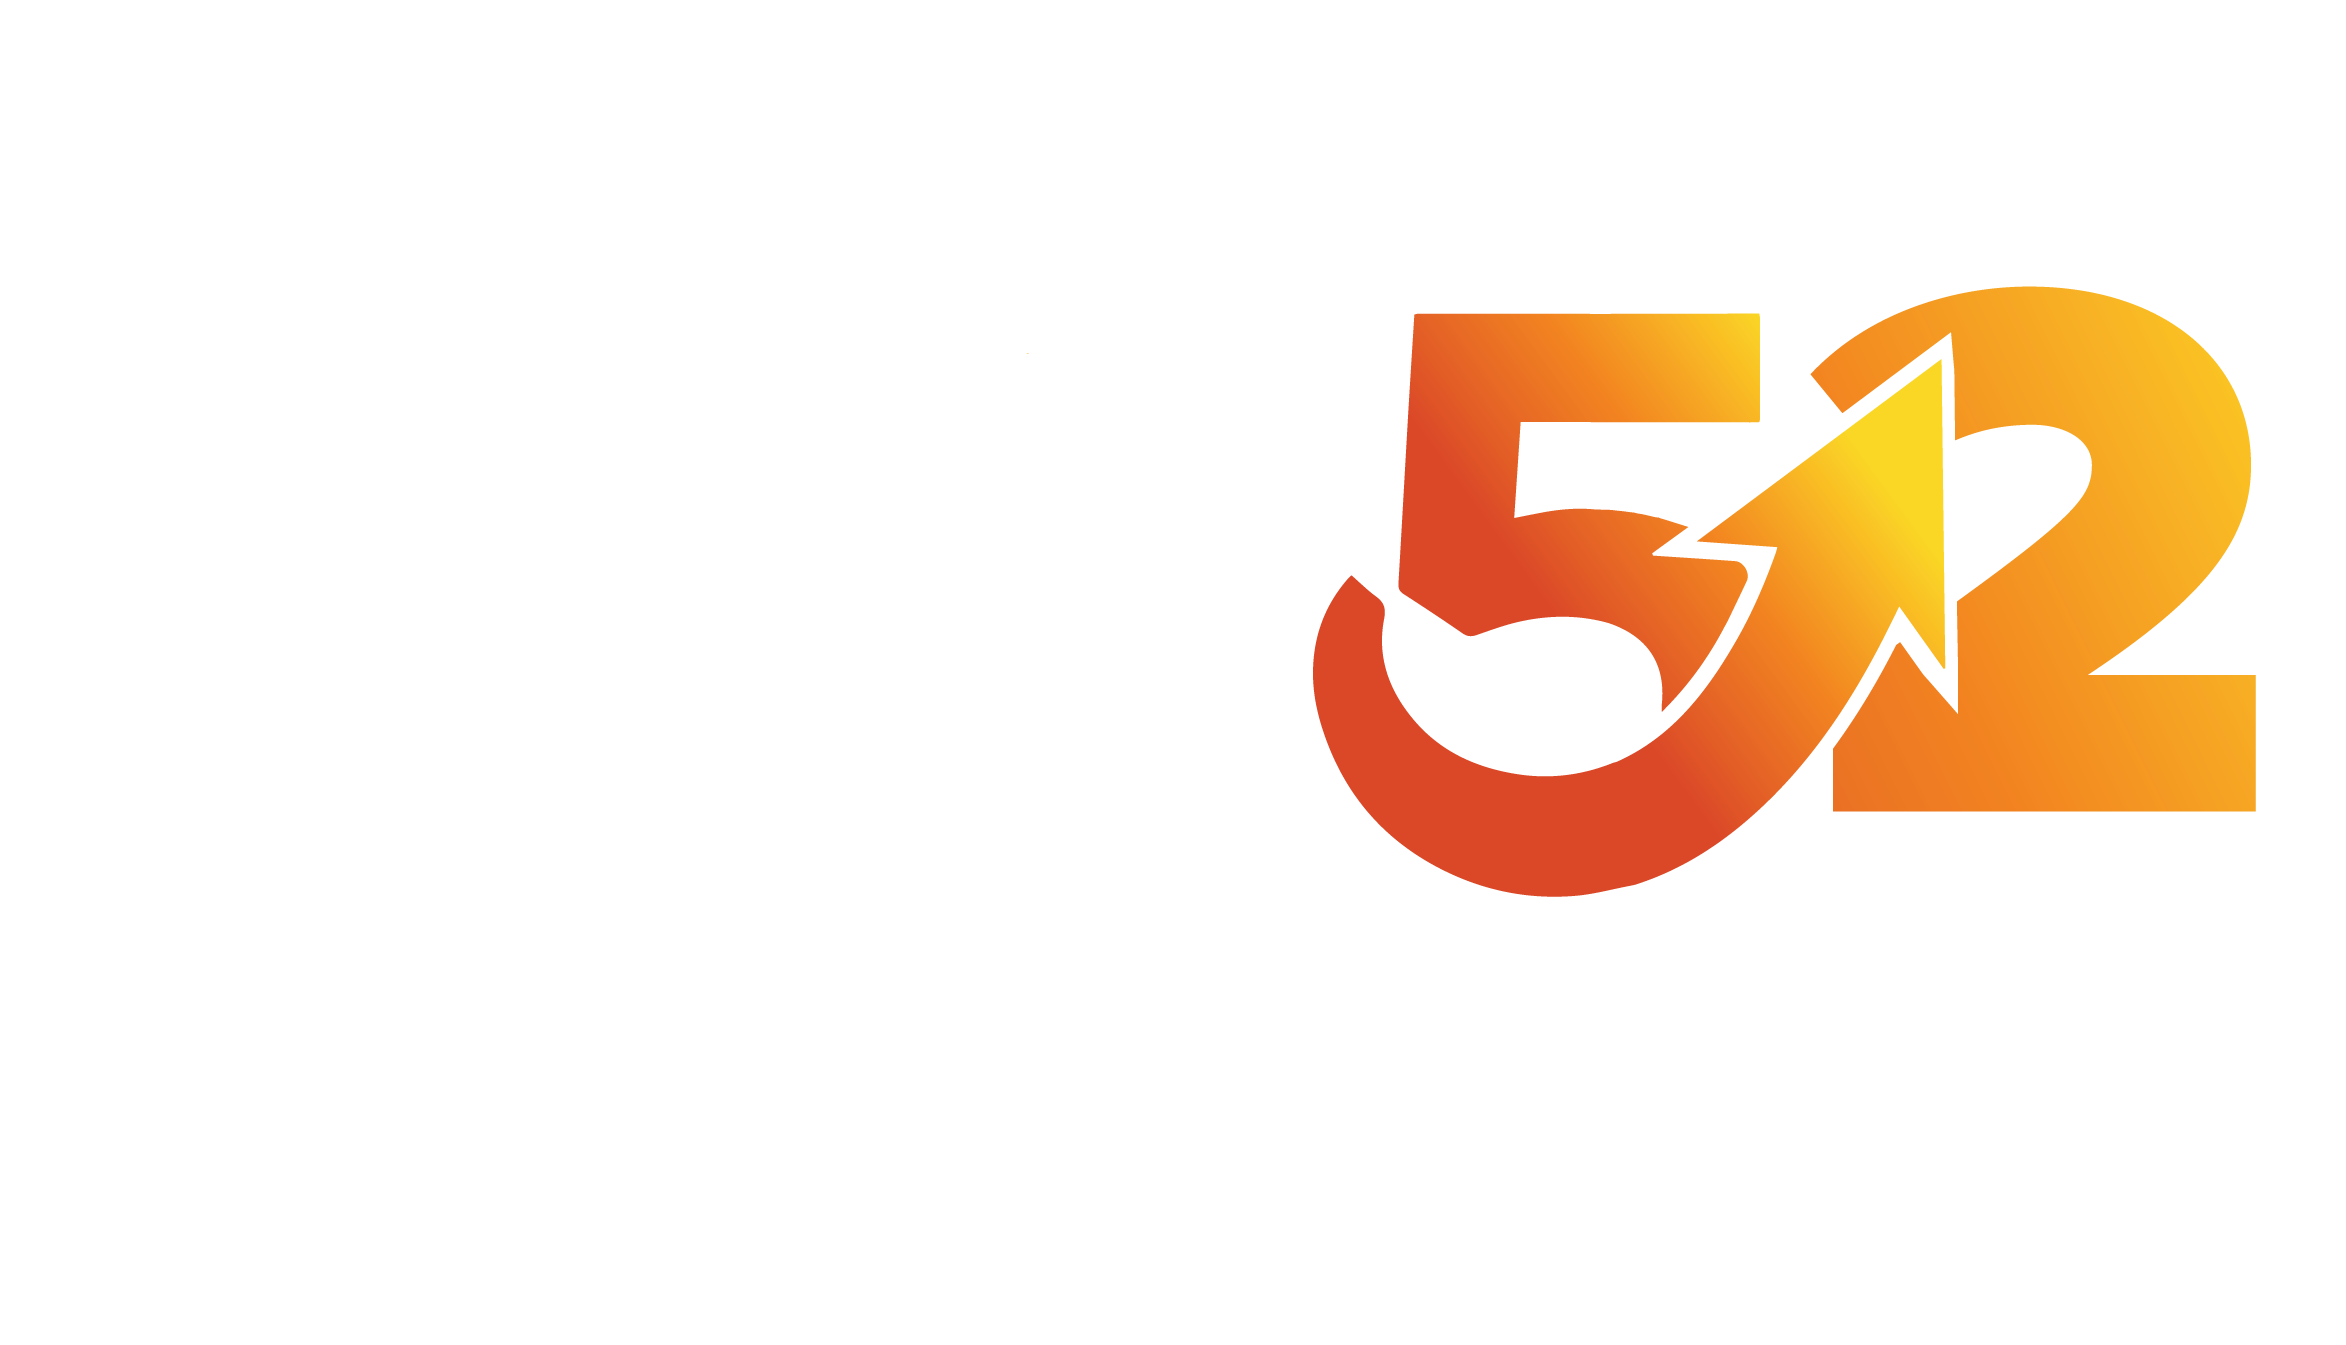 Take 52 logo